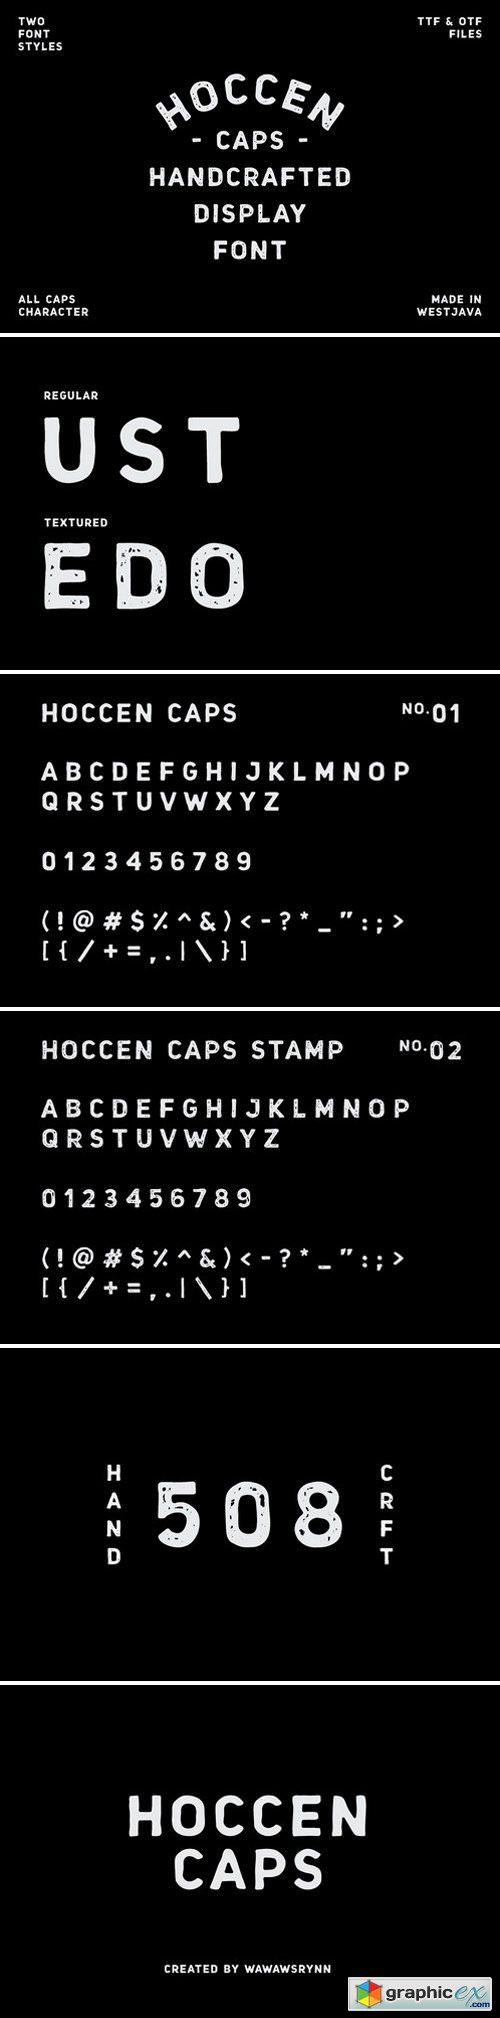 HOCCEN CAPS Display Font